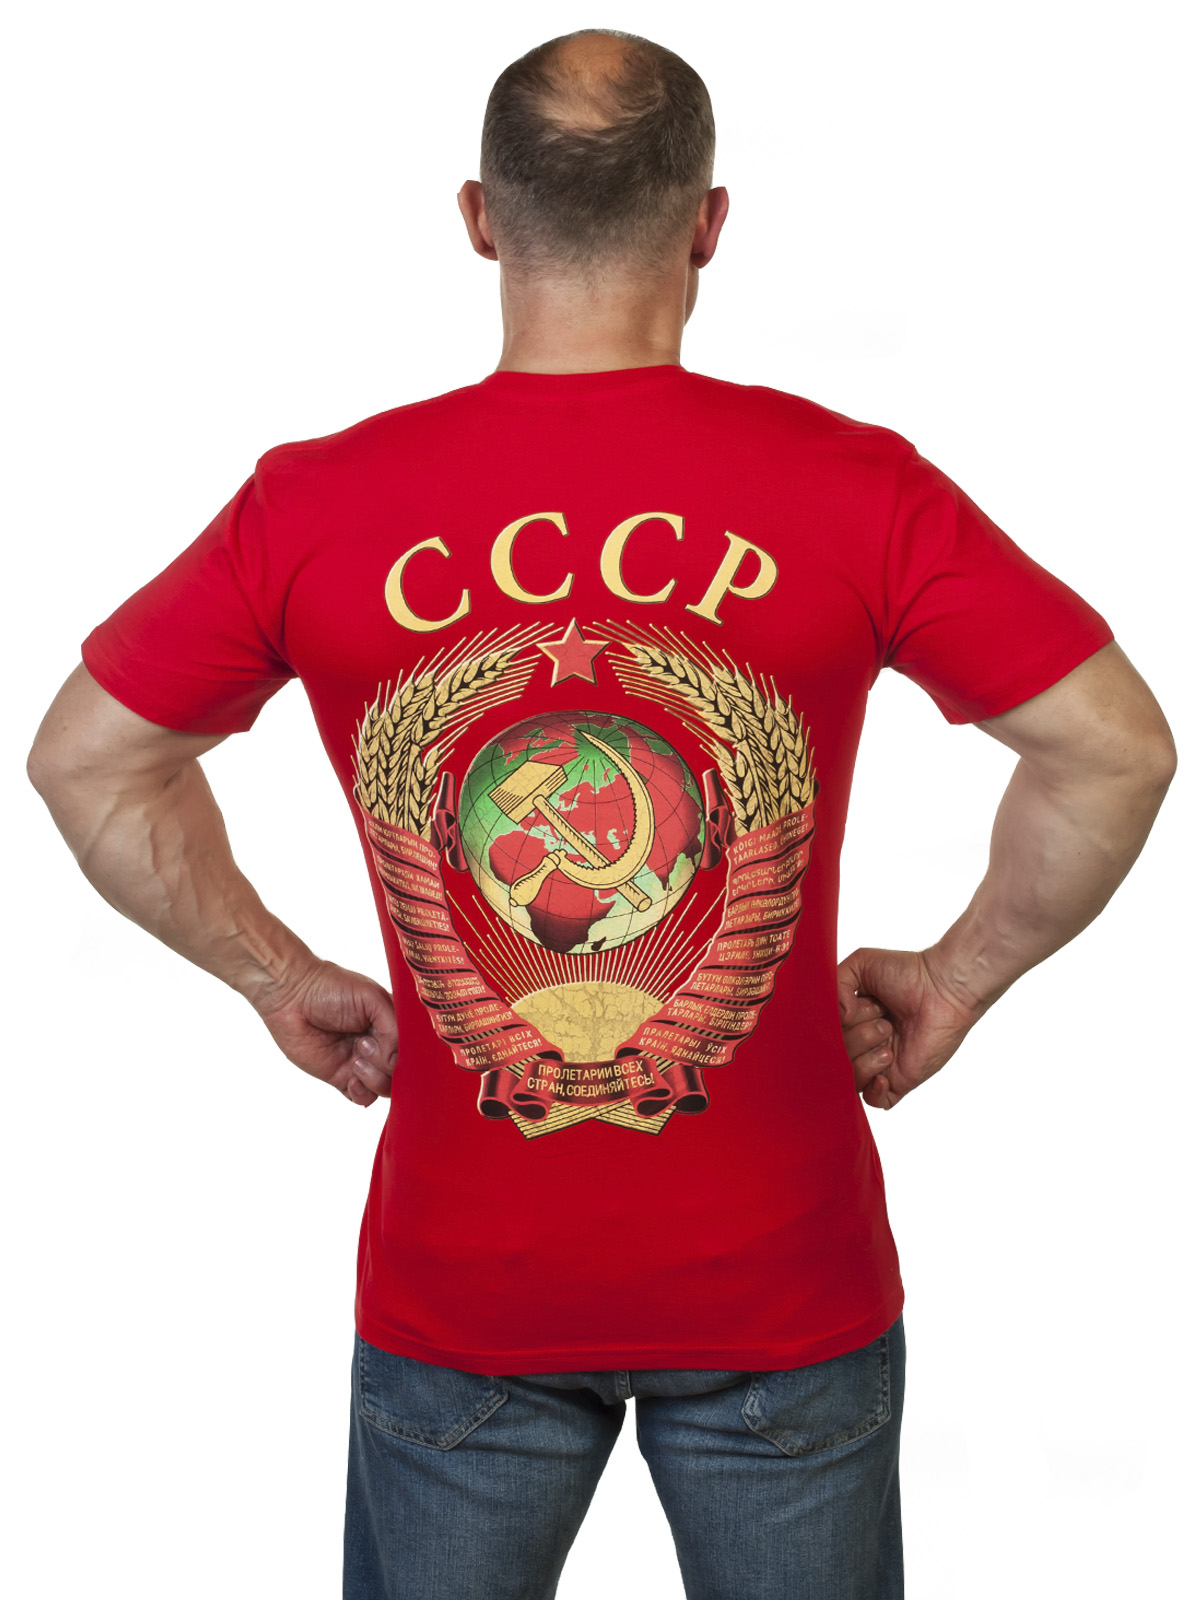 Оригинальная футболка из ностальгической коллекции СССР 